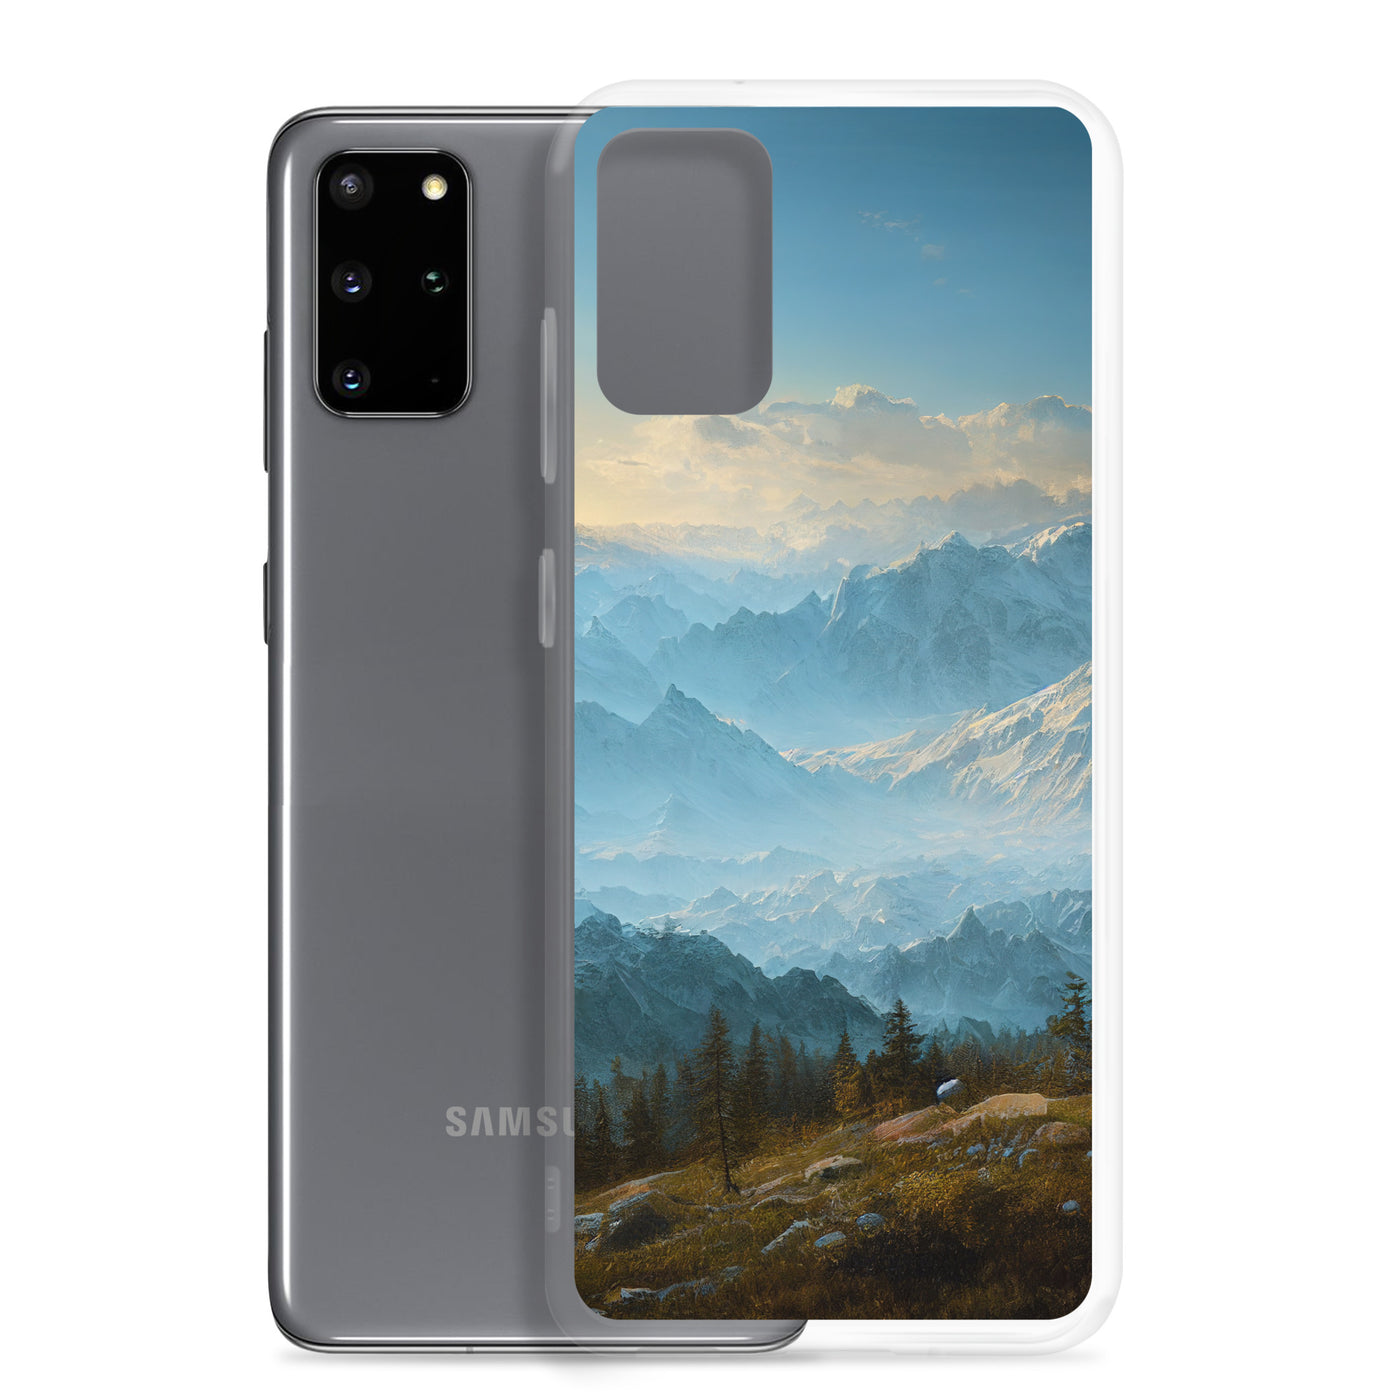 Schöne Berge mit Nebel bedeckt - Ölmalerei - Samsung Schutzhülle (durchsichtig) berge xxx